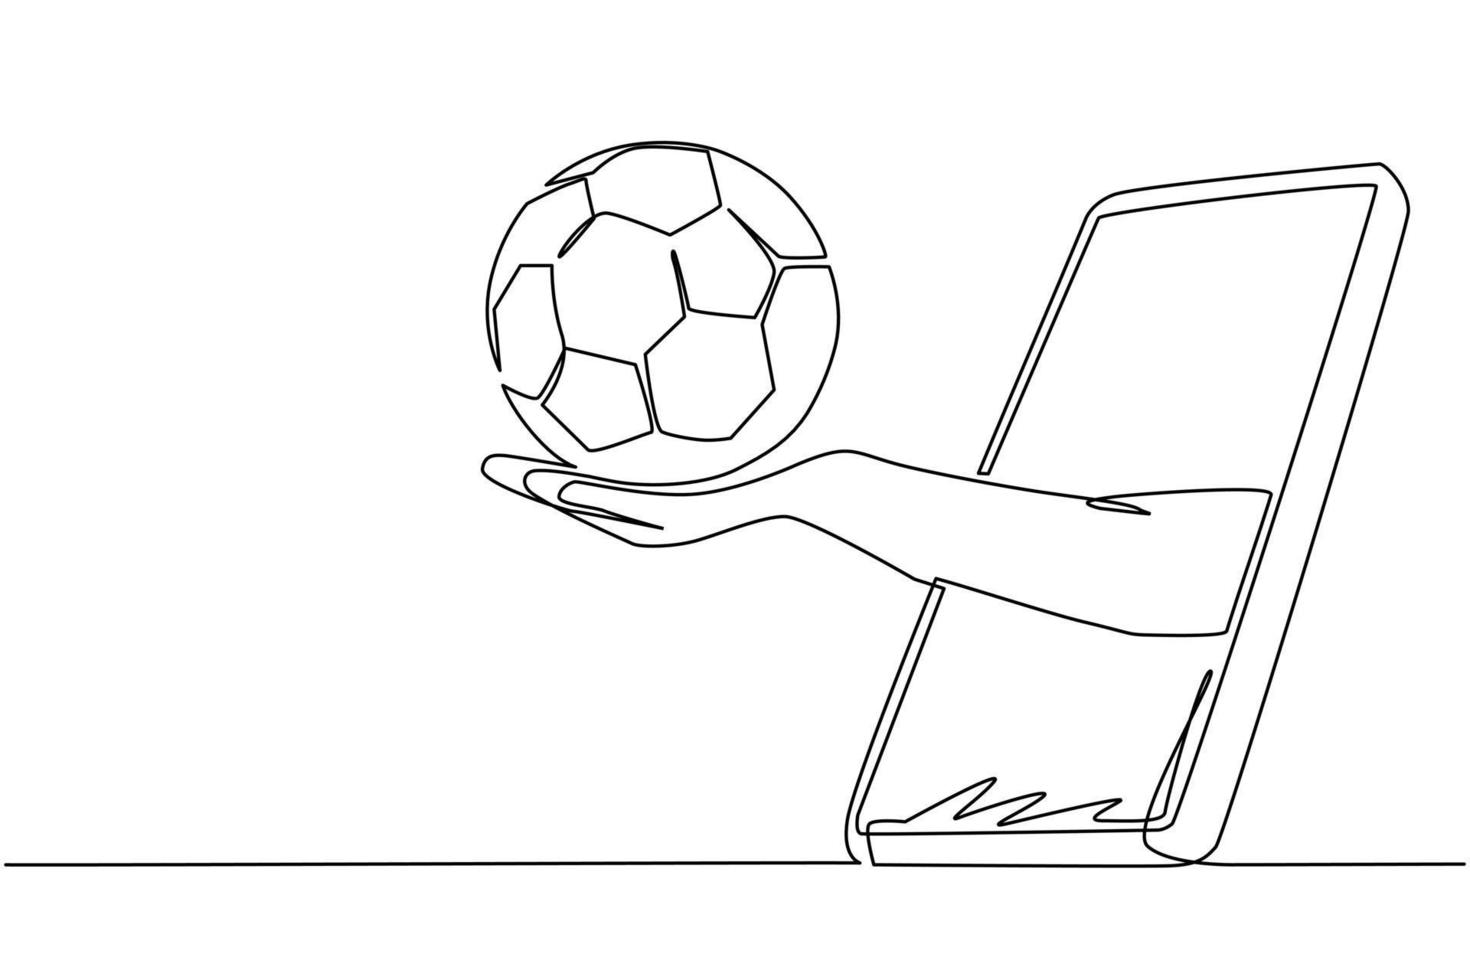 enda kontinuerlig linjeritning hand håller fotboll genom smartphone. koncept för onlinespel, sportsändningar. fotbollsspel online. dynamisk en rad rita grafisk design vektorillustration vektor